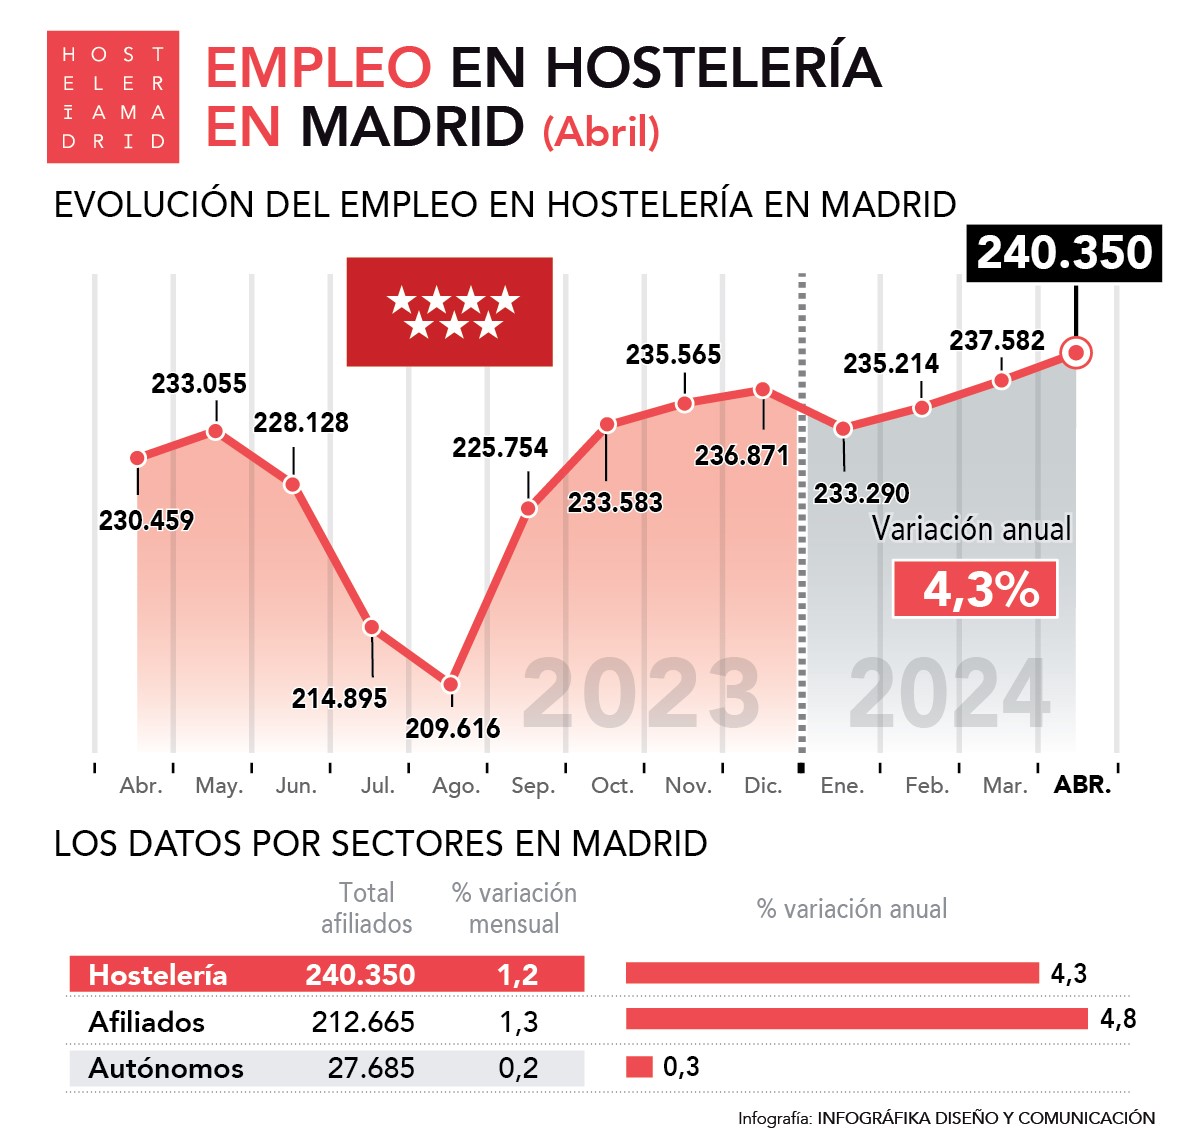 Crece un 4,3% el empleo en abril en la hostelería de Madrid, la segunda región que más crece después de Canarias - La Viña